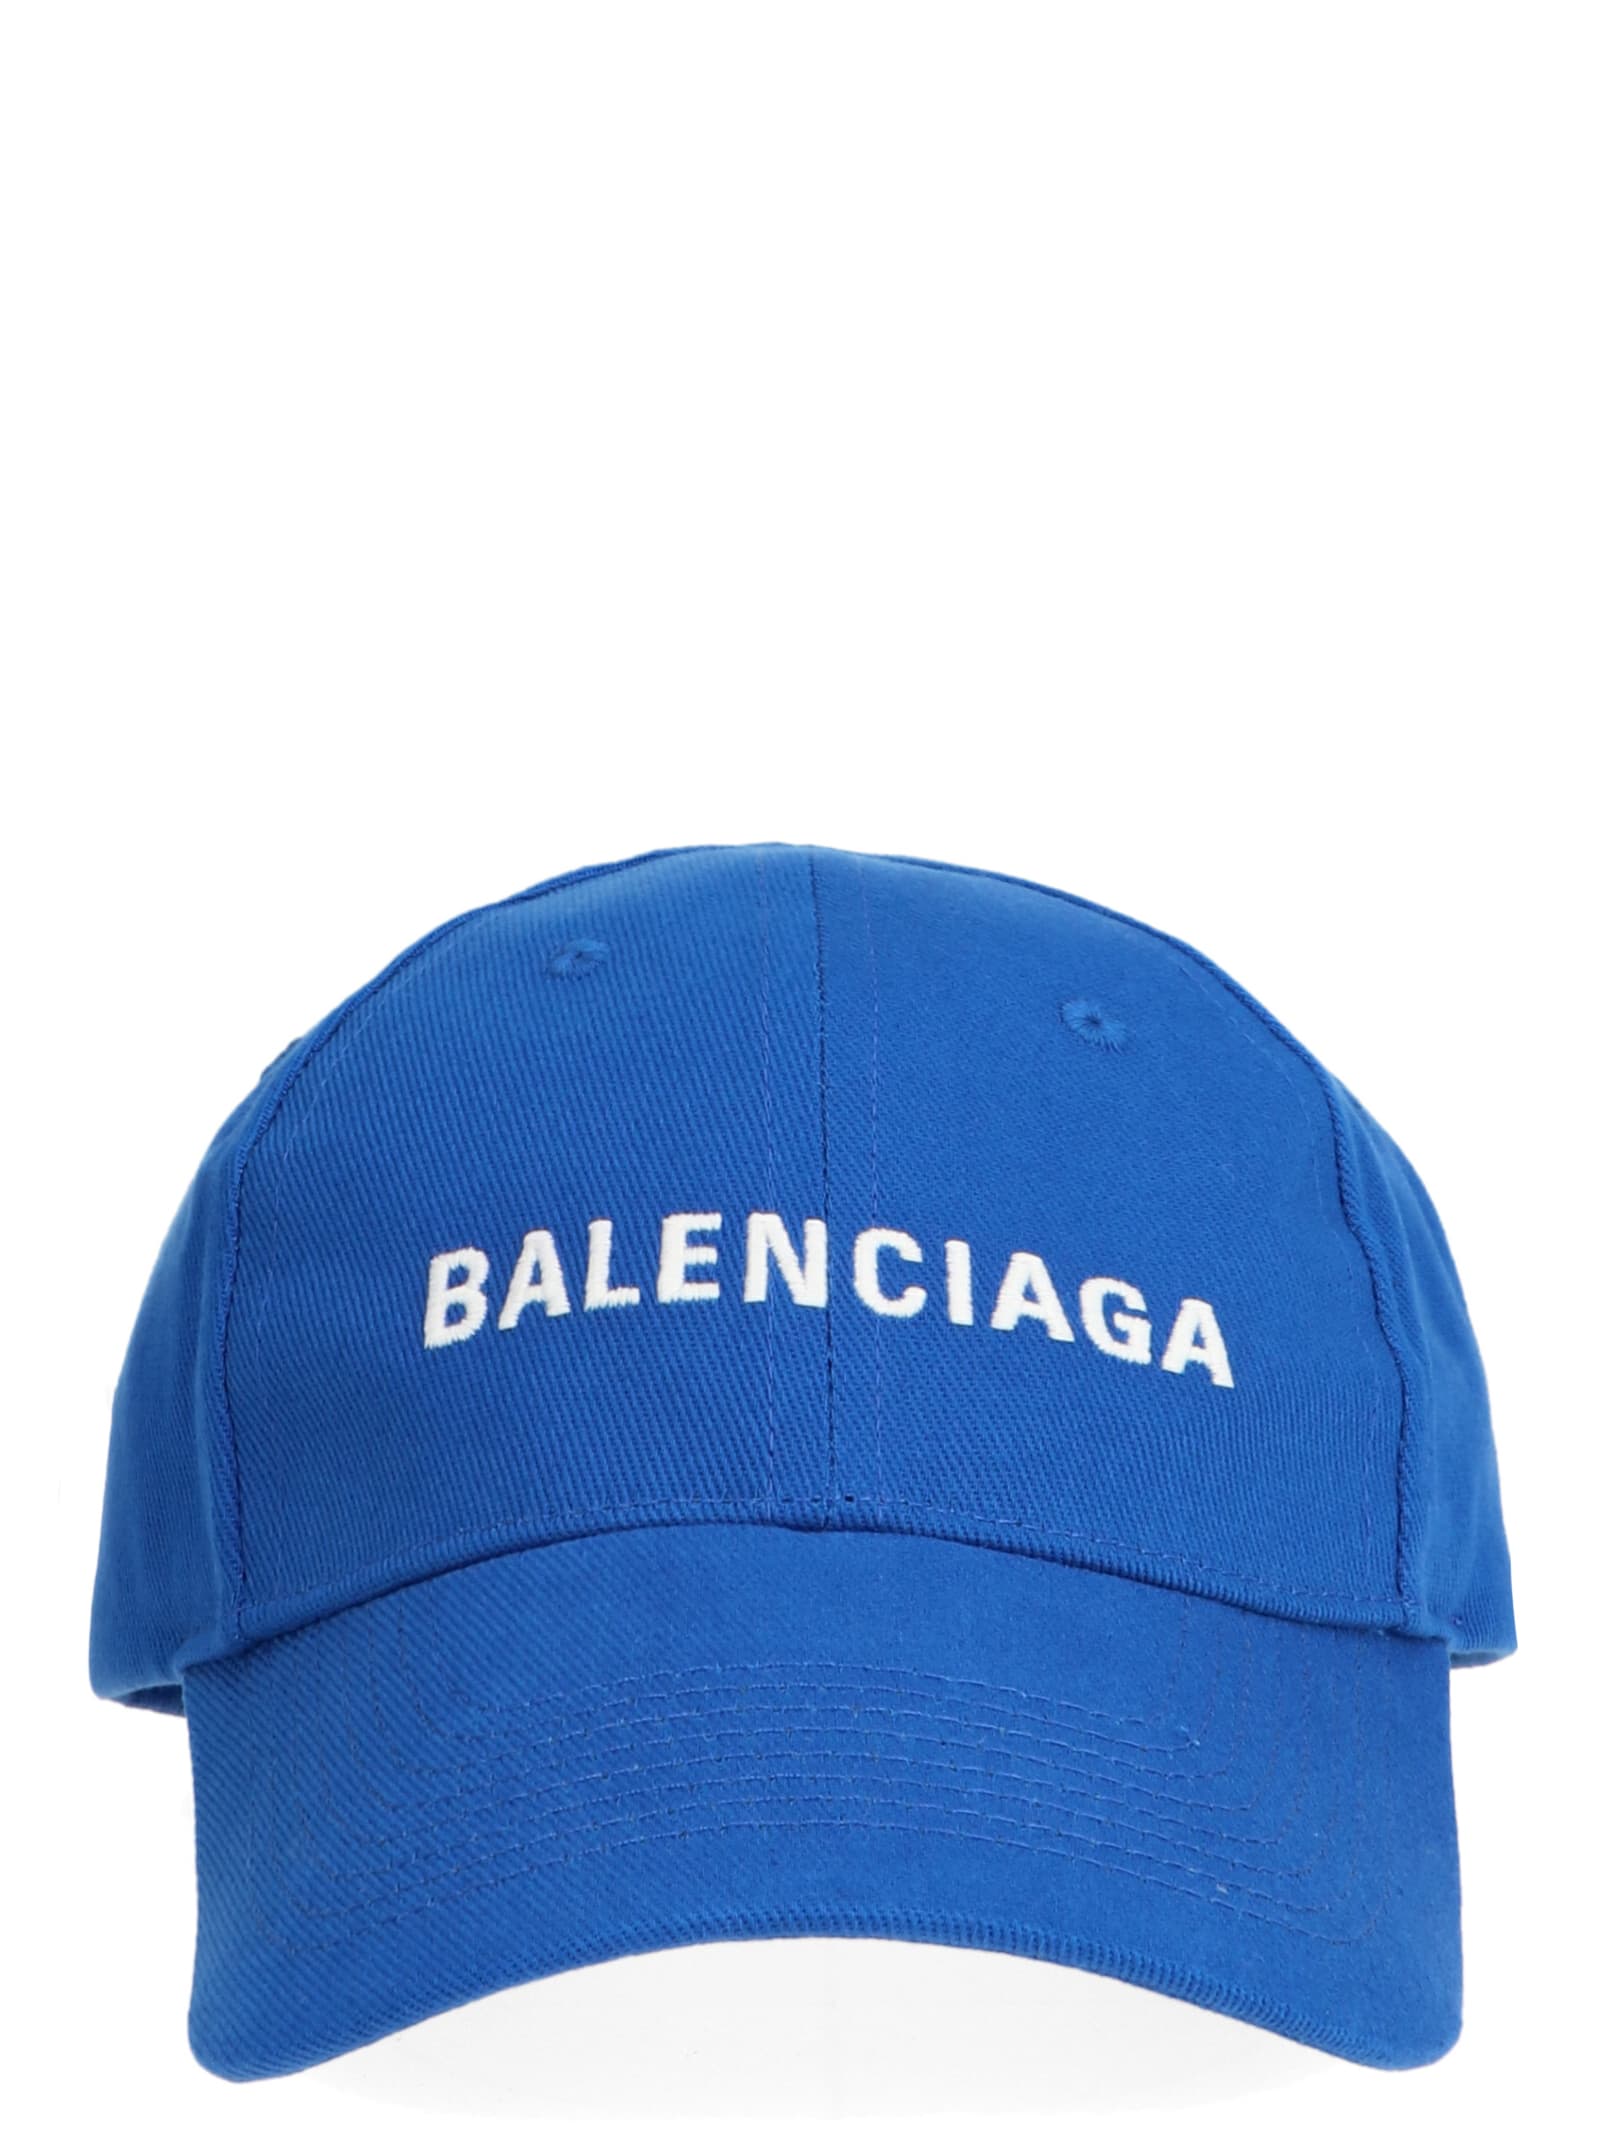 Balenciaga Balenciaga Cap - Blue 